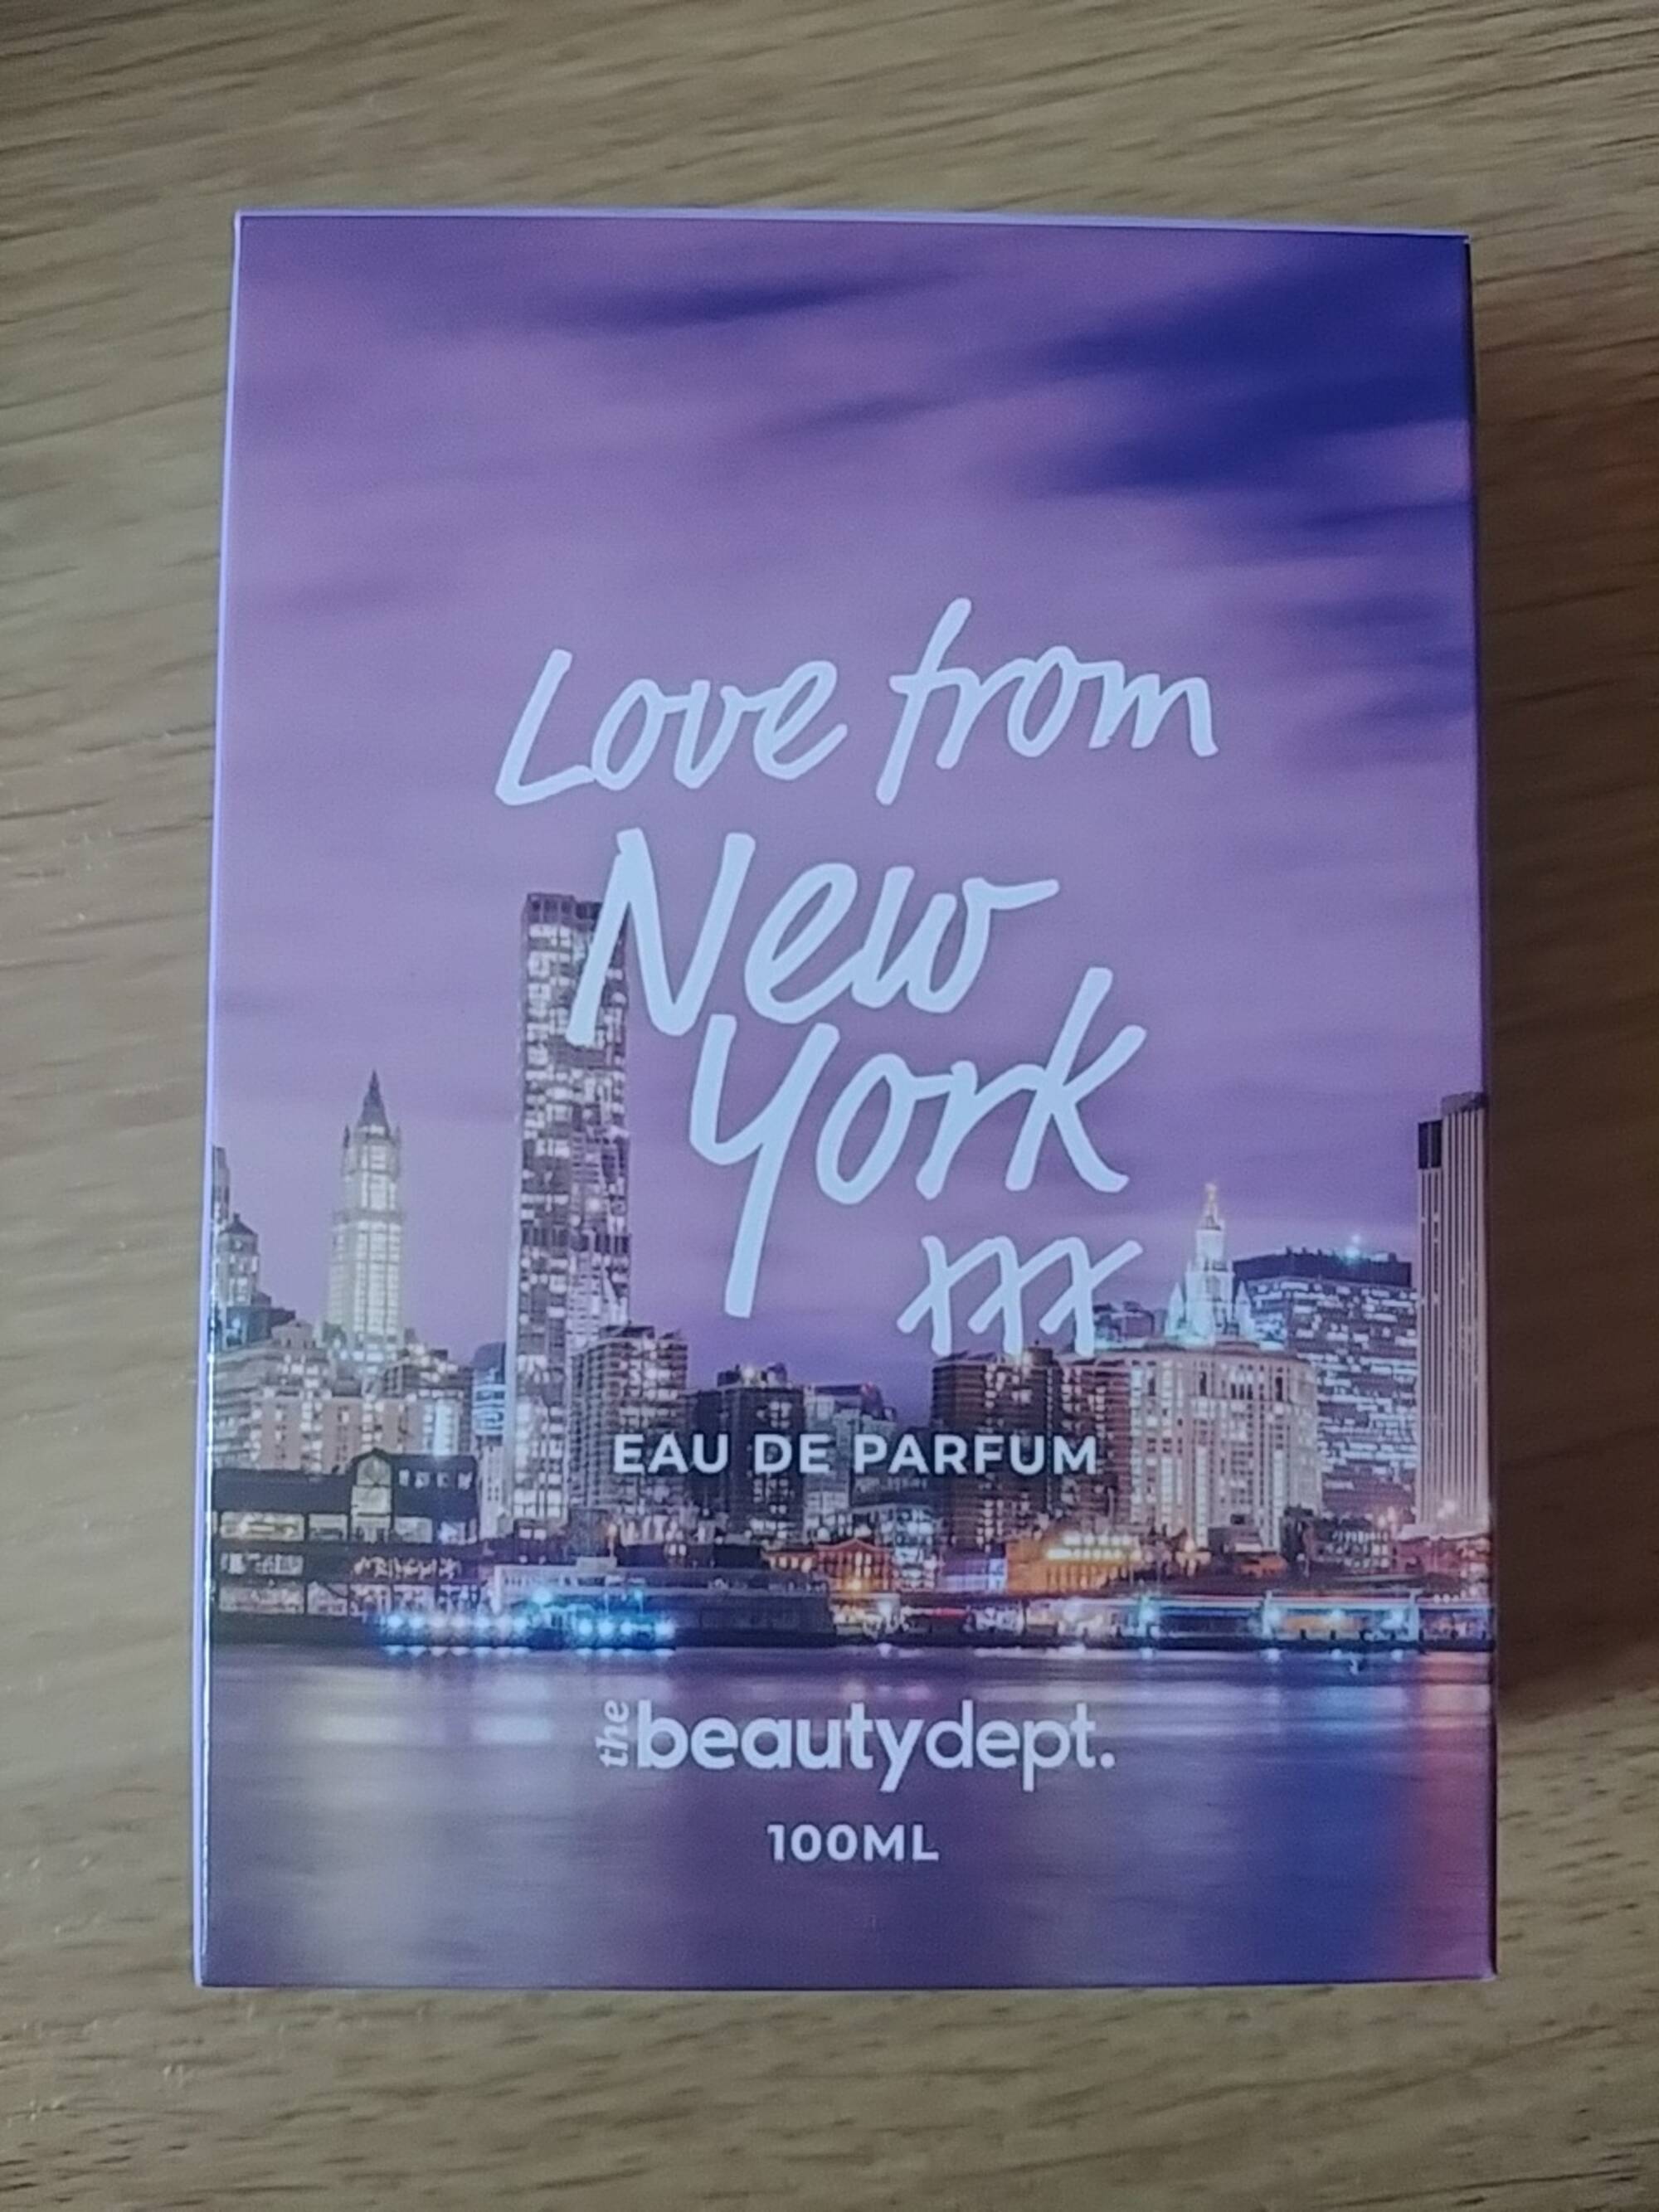 BEAUTYDEPT. - Love from new york XXX - Eau de parfum